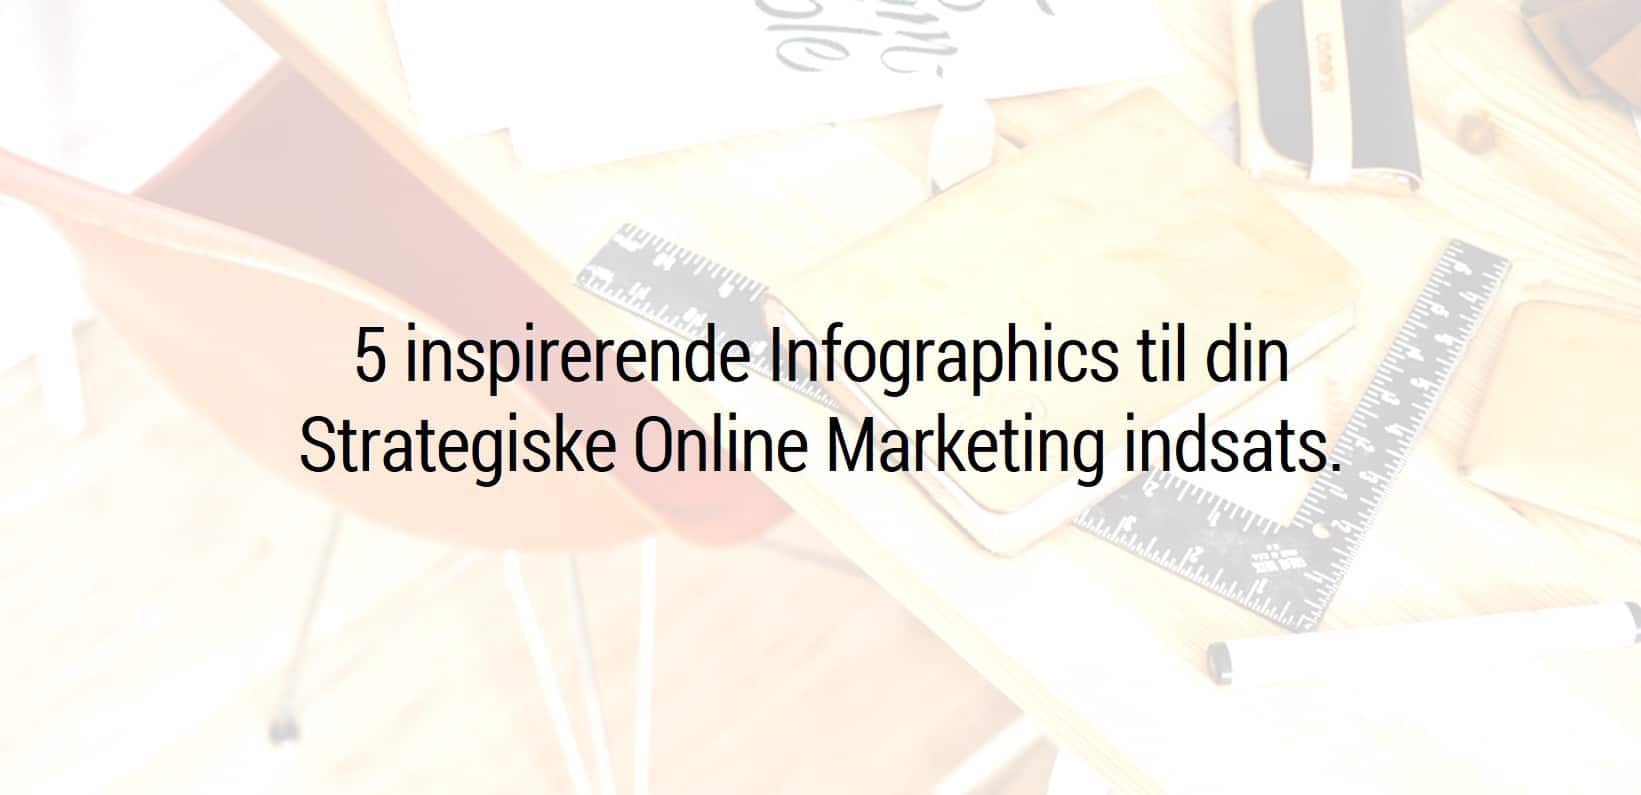 Infographics Strategiske Online Marketing indsats